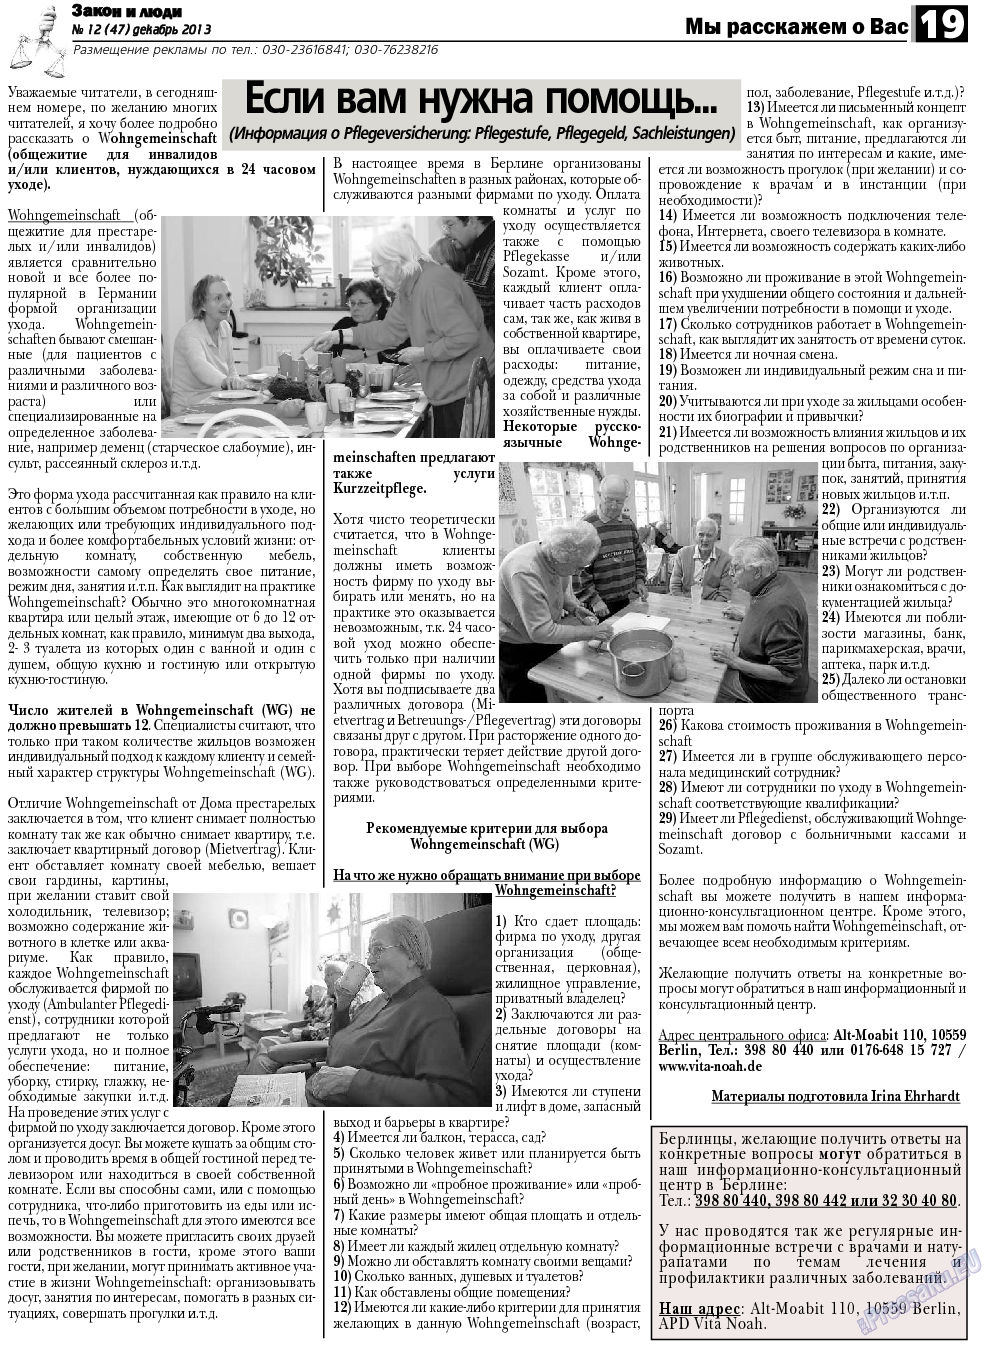 Закон и люди, газета. 2013 №12 стр.19